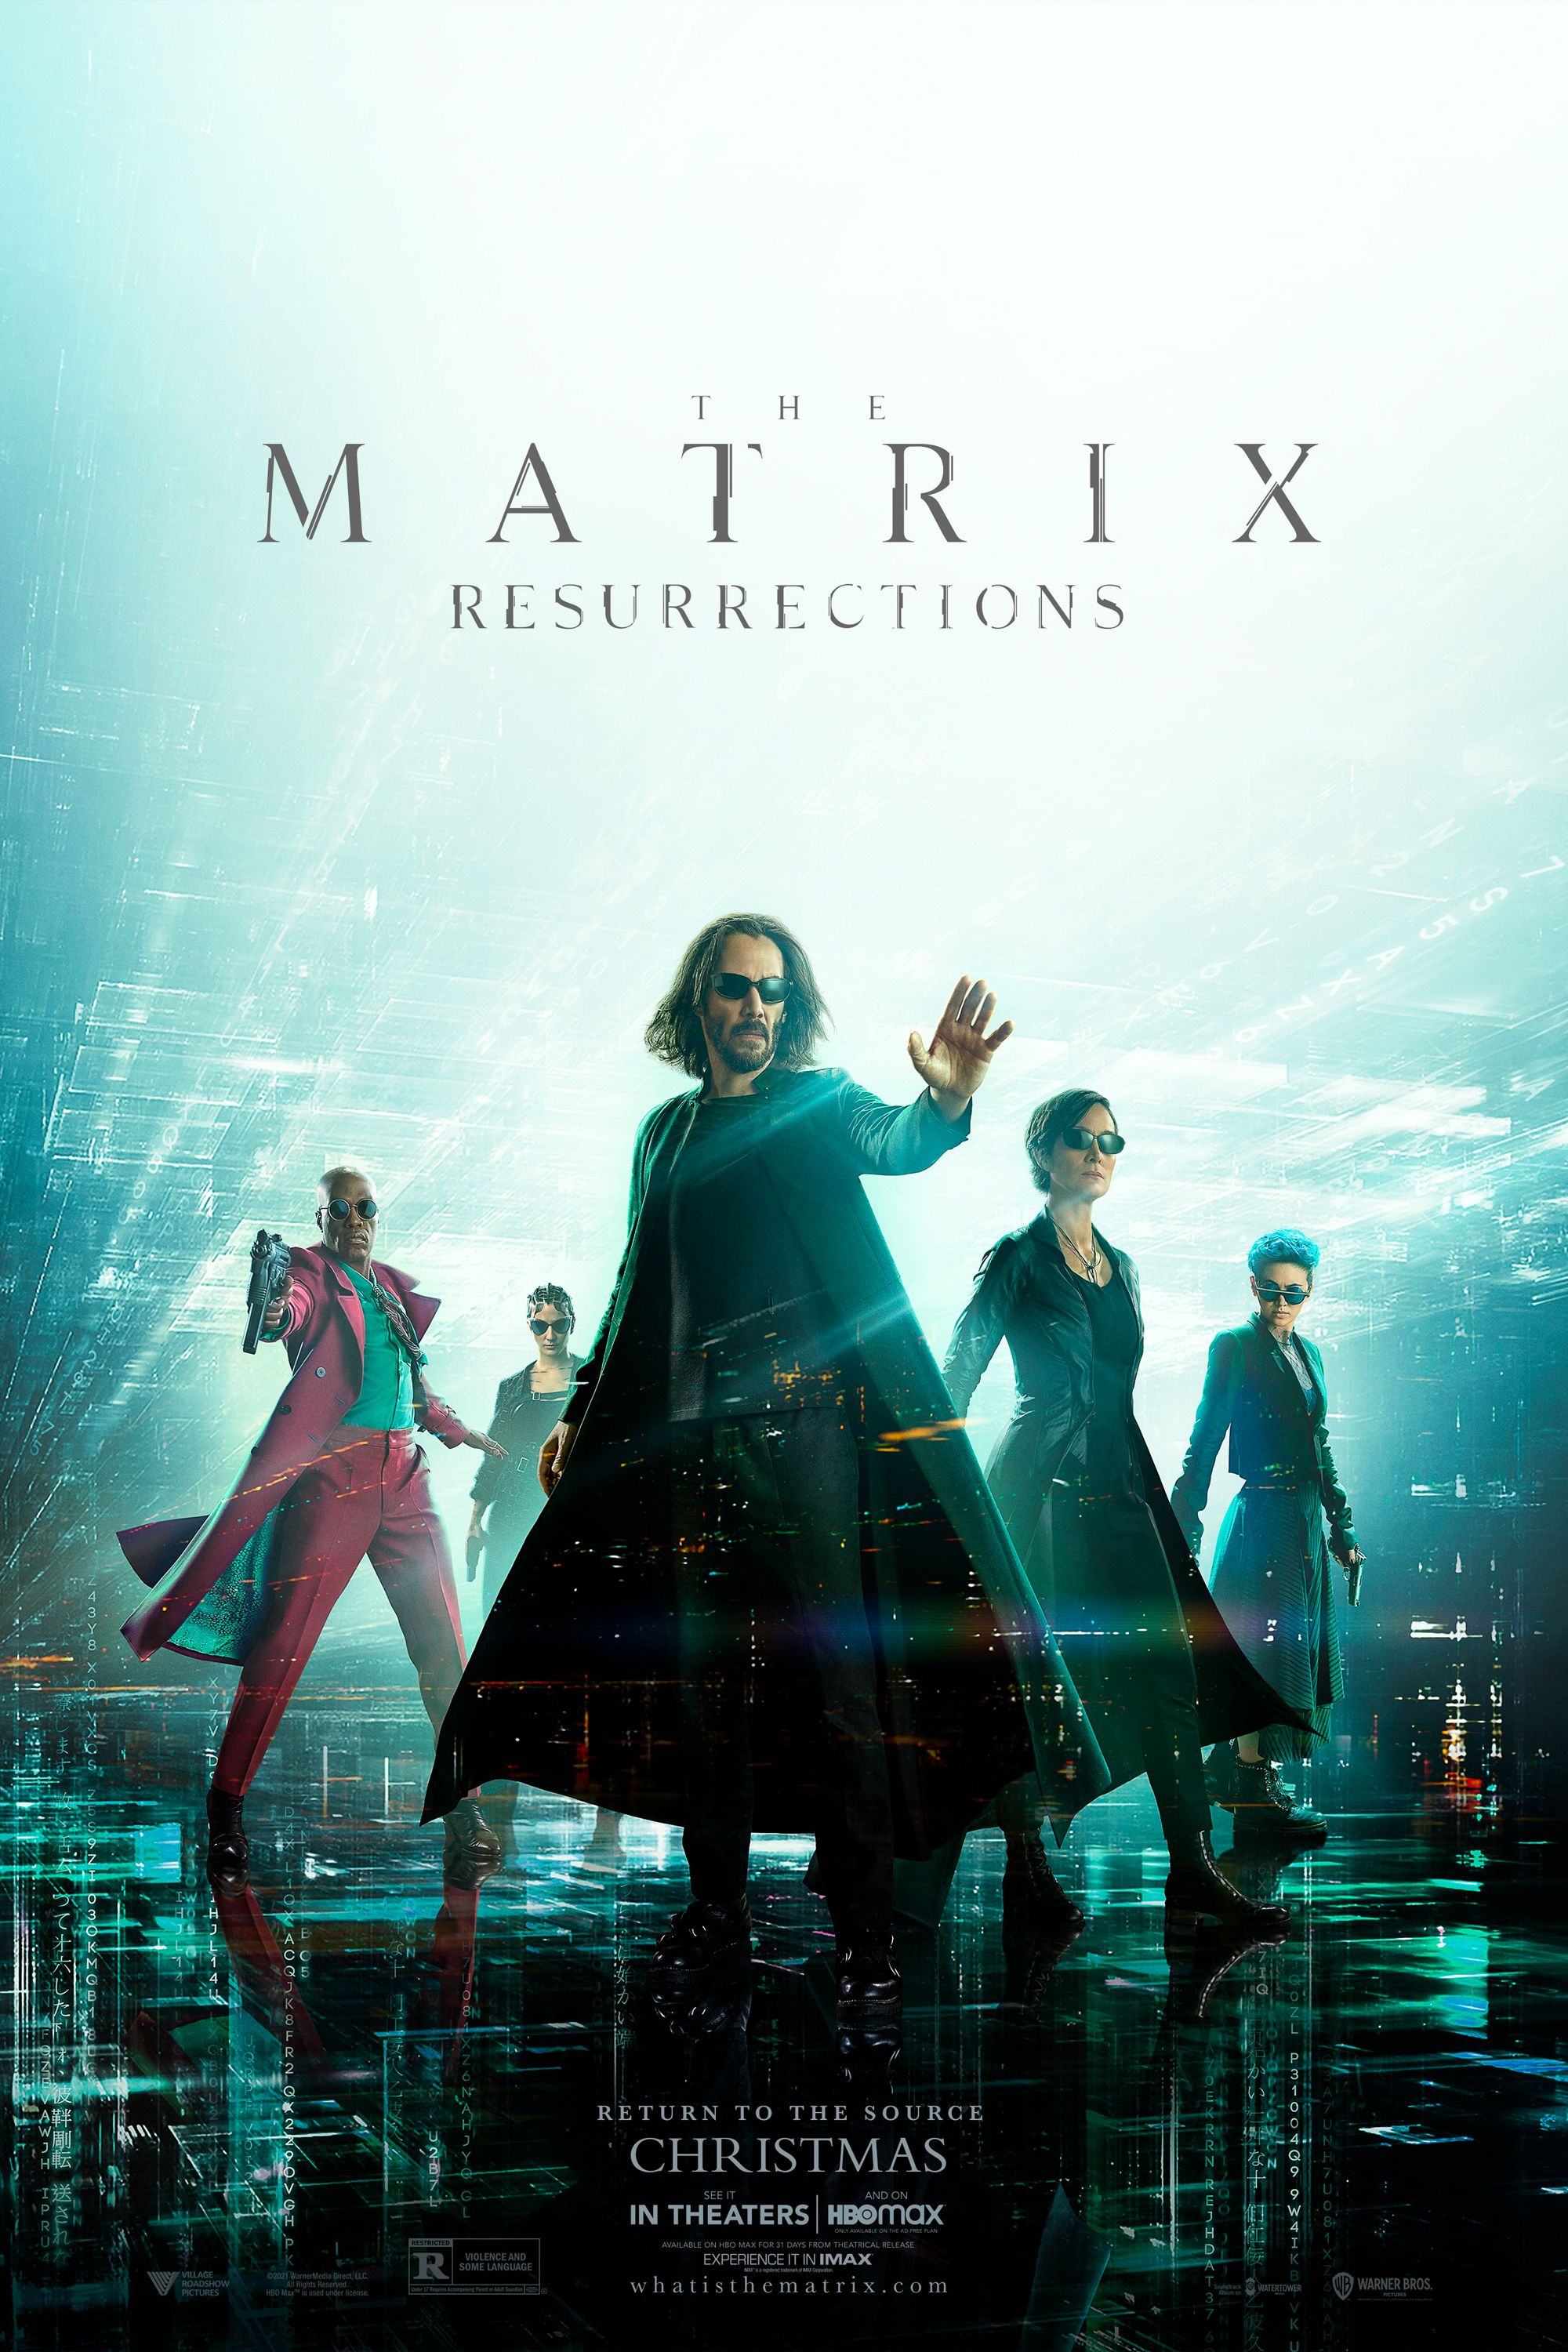 Pôster das Ressurreições de Matrix